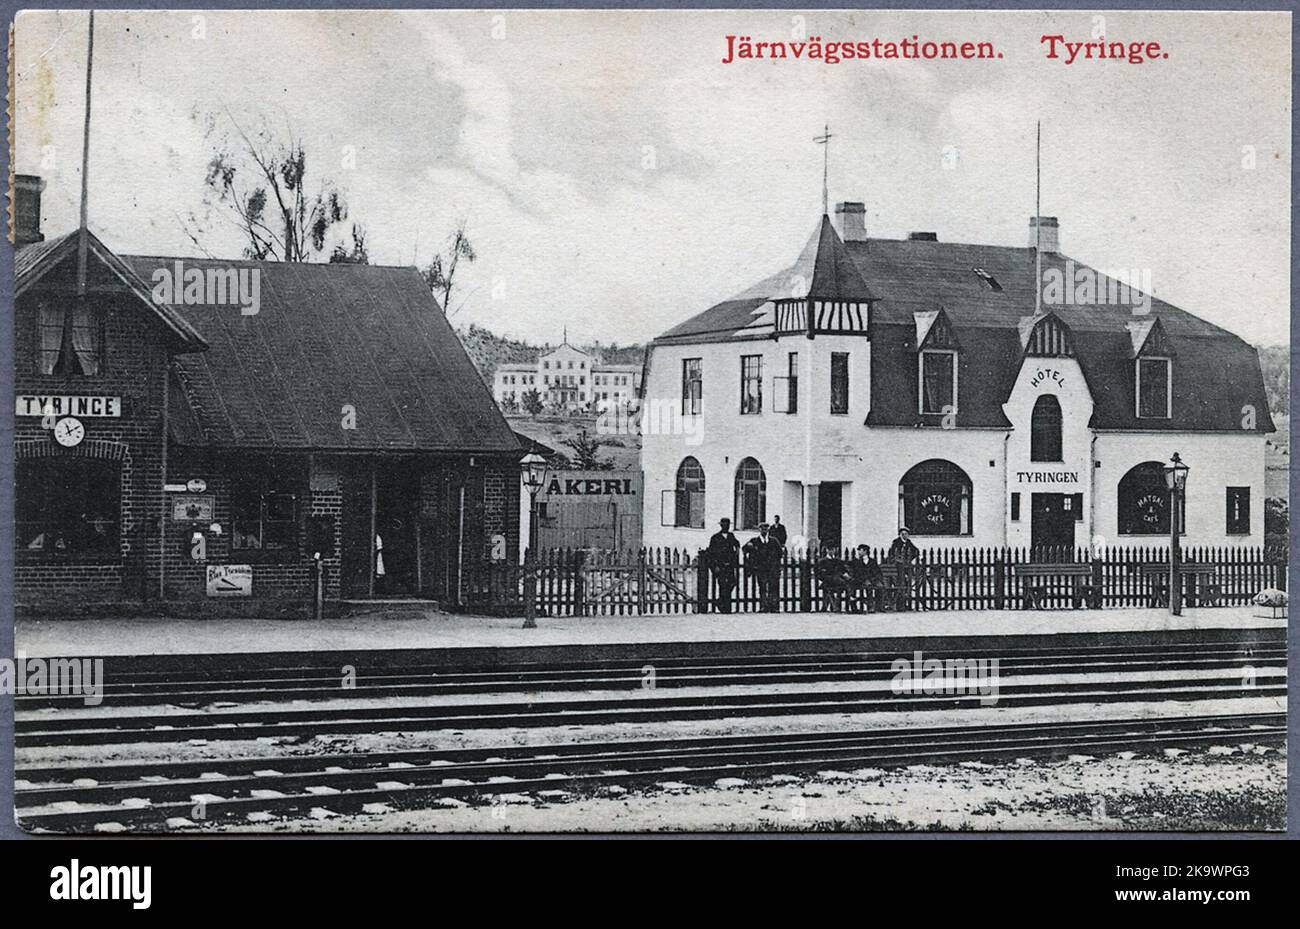 Tyringe Station. Stock Photo